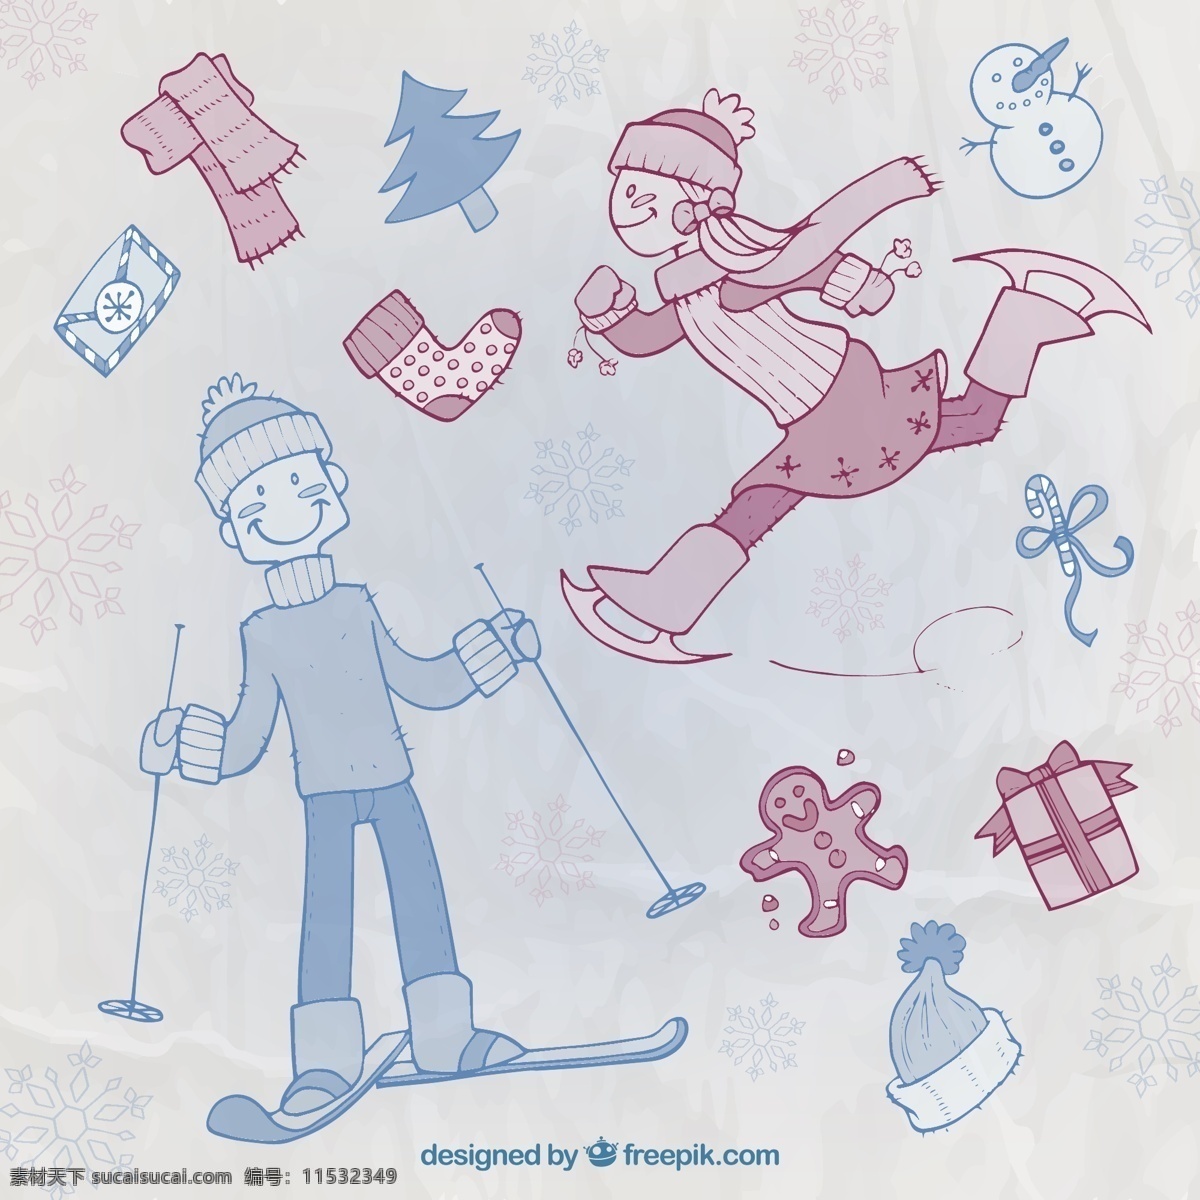 粗略 冬季 运动 特征 圣诞节 一方面 体育 圣诞快乐 冬天 手绘 快乐 个性 庆祝 冰 假期 画画 滑雪 节日快乐 滑冰 文字 画 季节 灰色